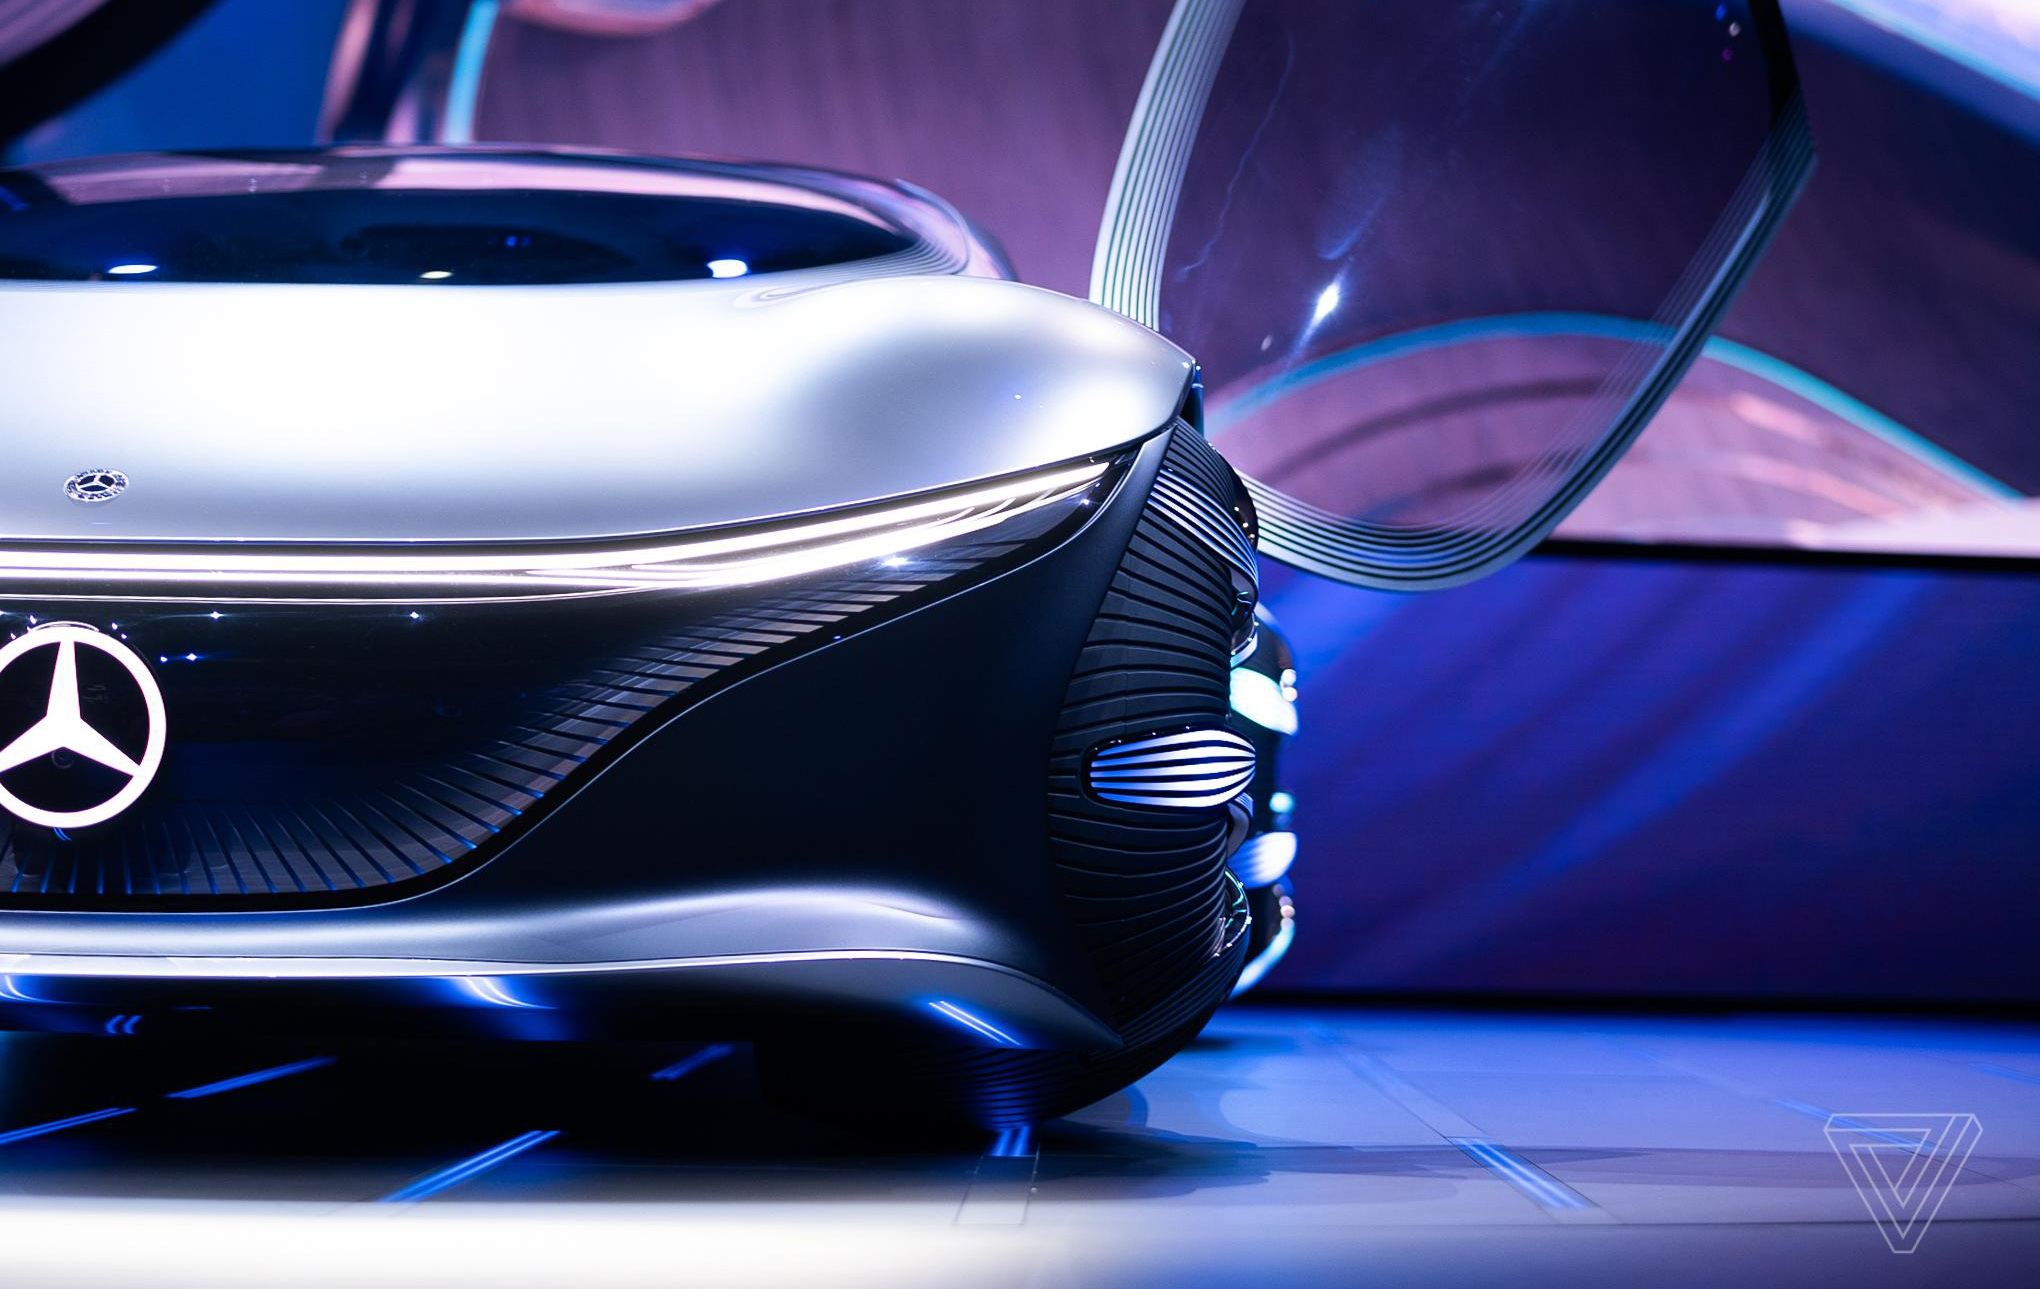 奔驰推出《阿凡达》主题概念车Vision AVTR 造型科幻